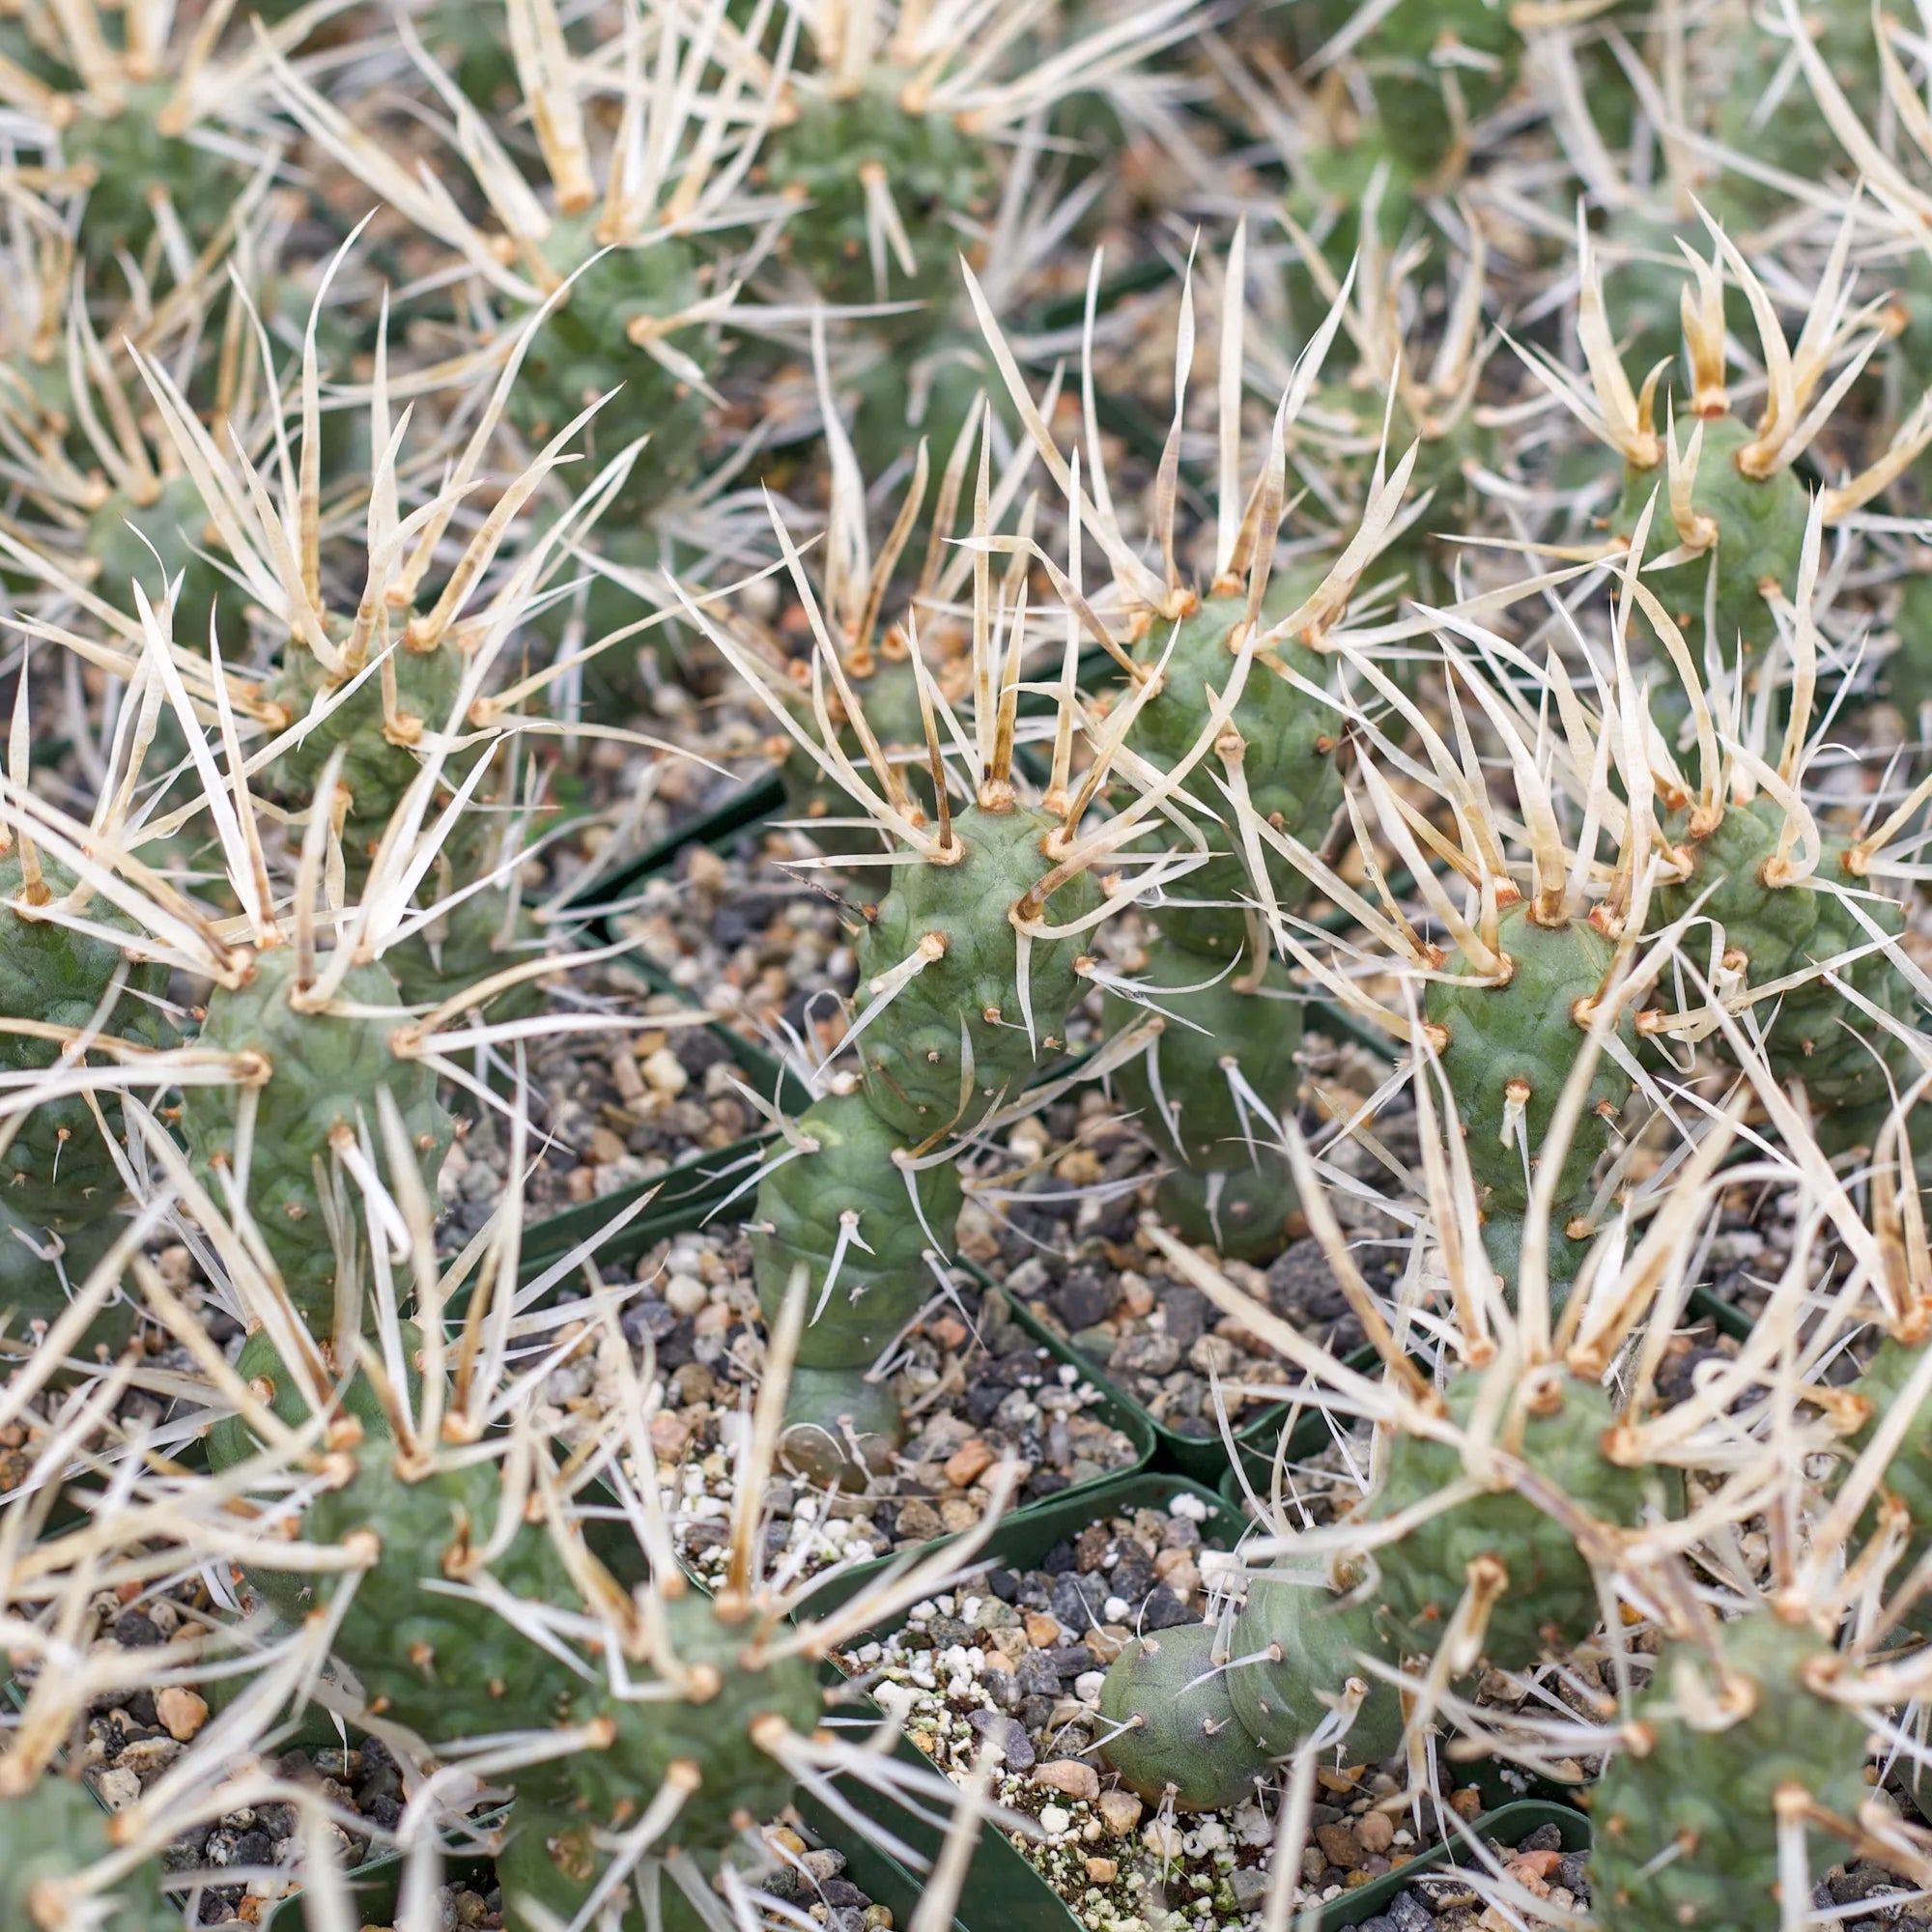 Tephrocactus articulatus var. papyracanthus 'Paper Spine Cactus'